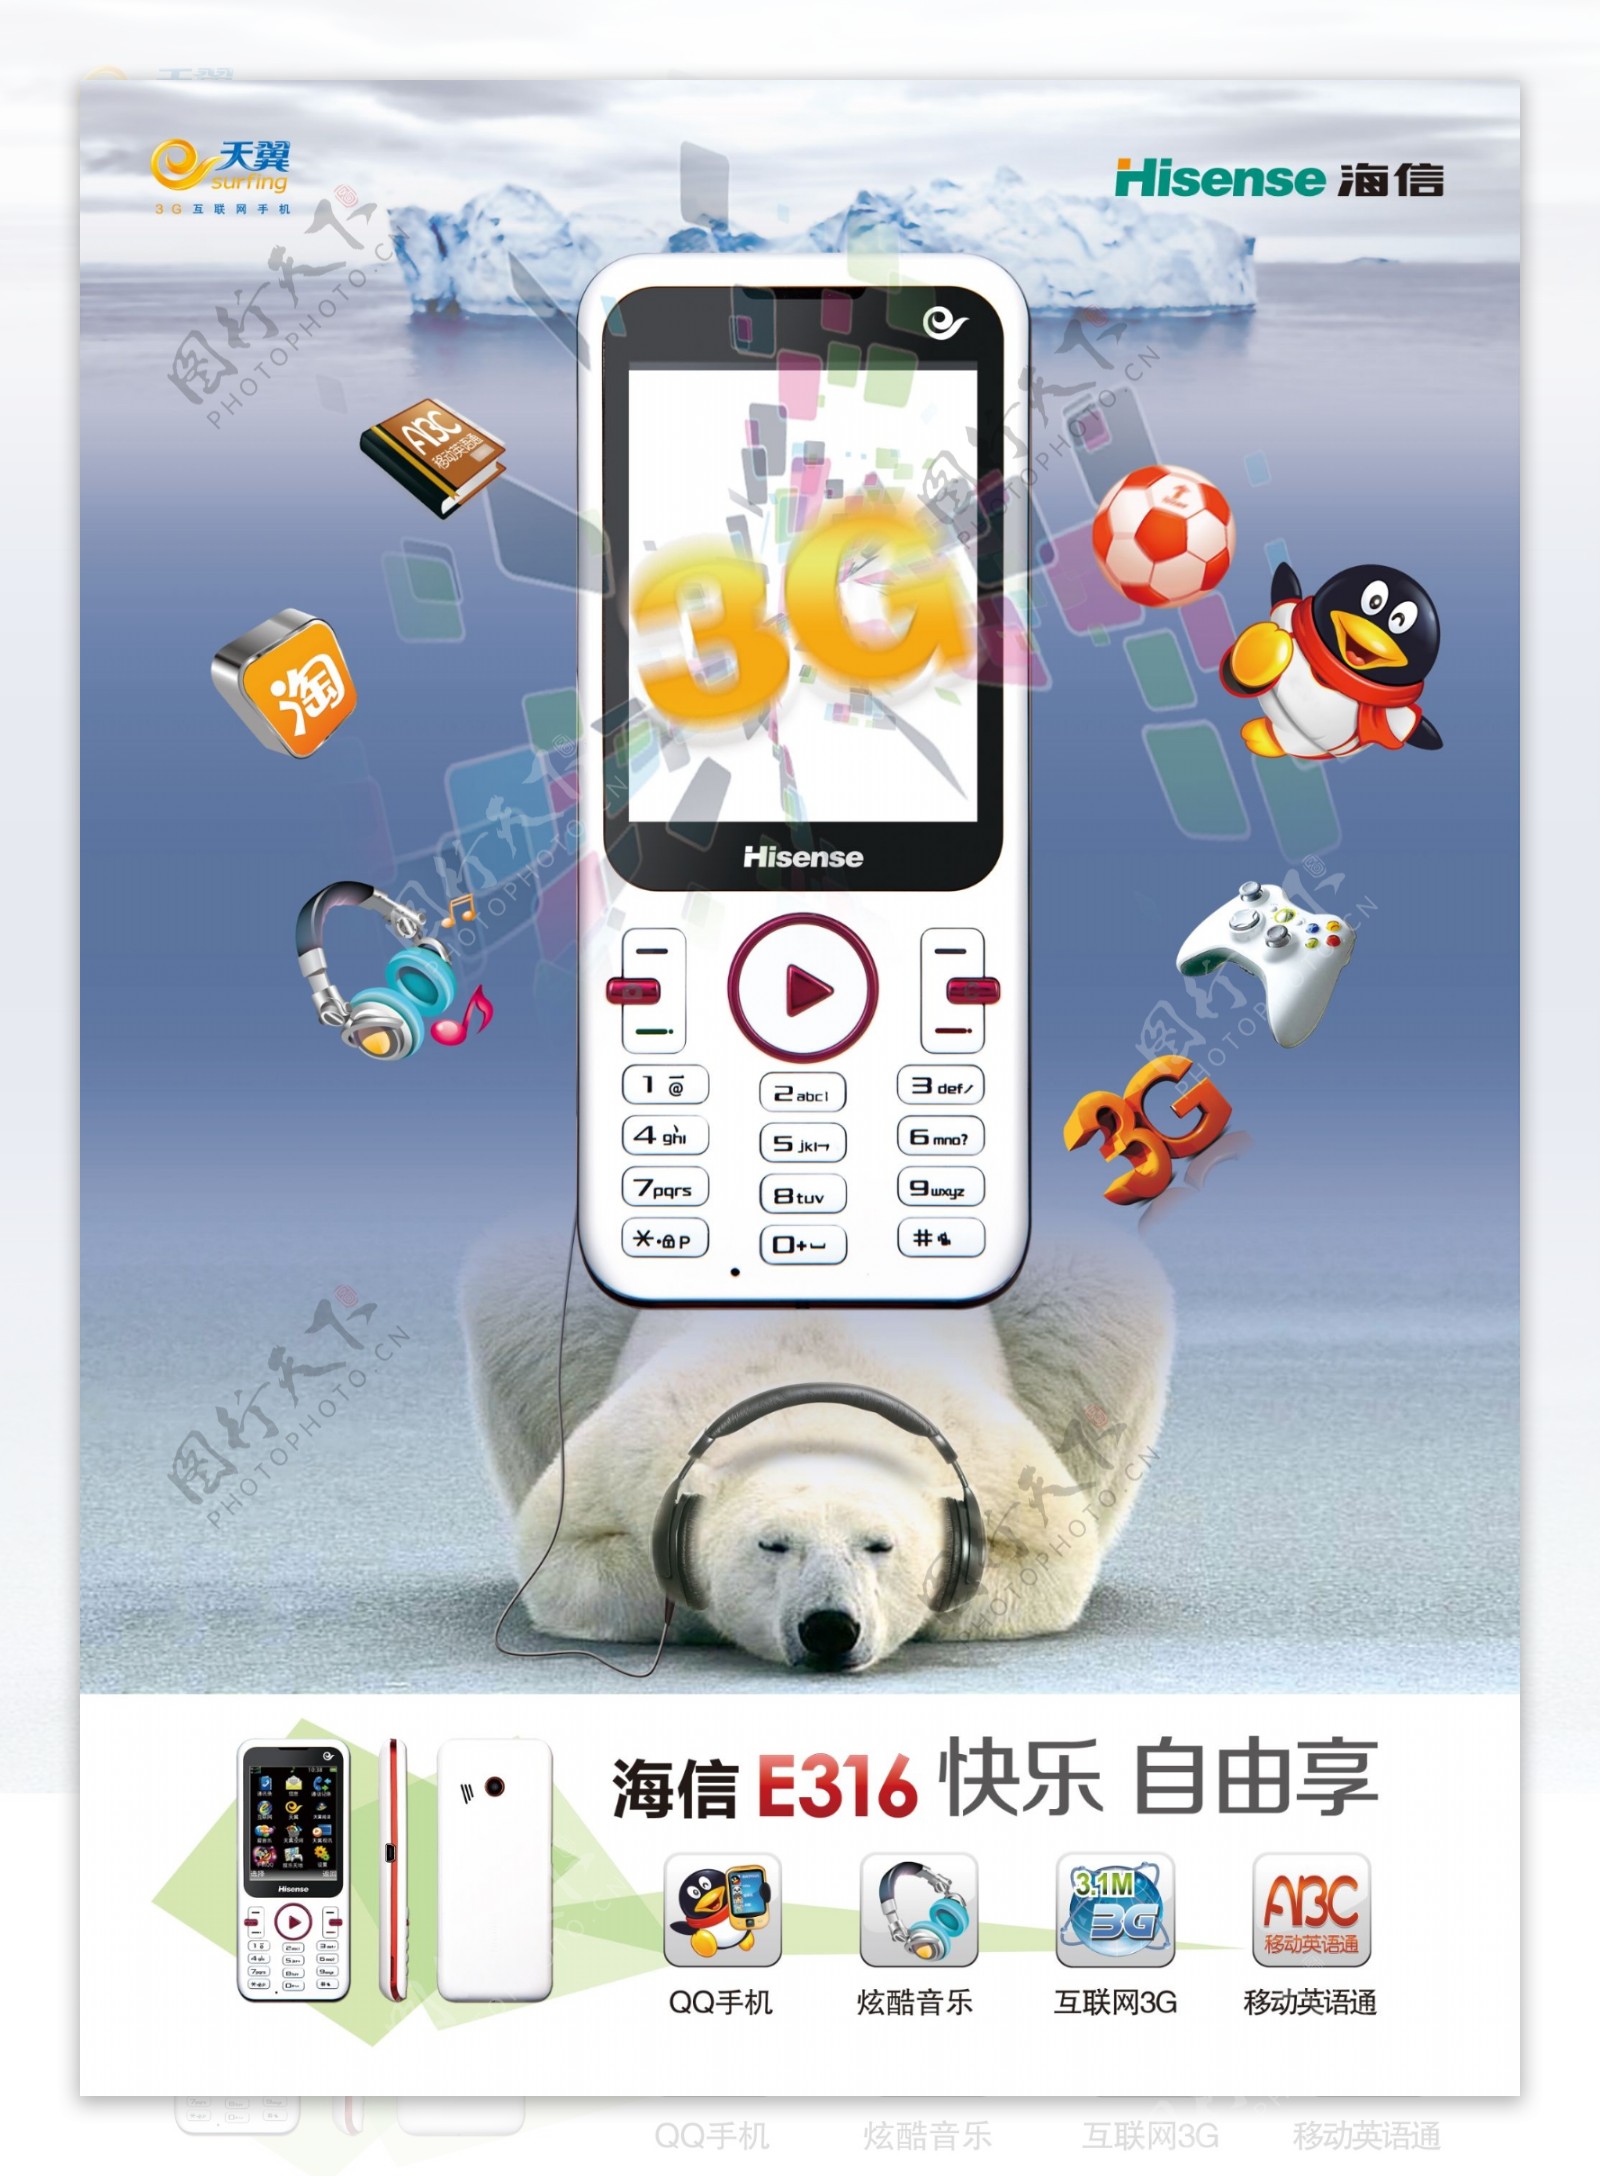 天翼海信手机广告PSD素材